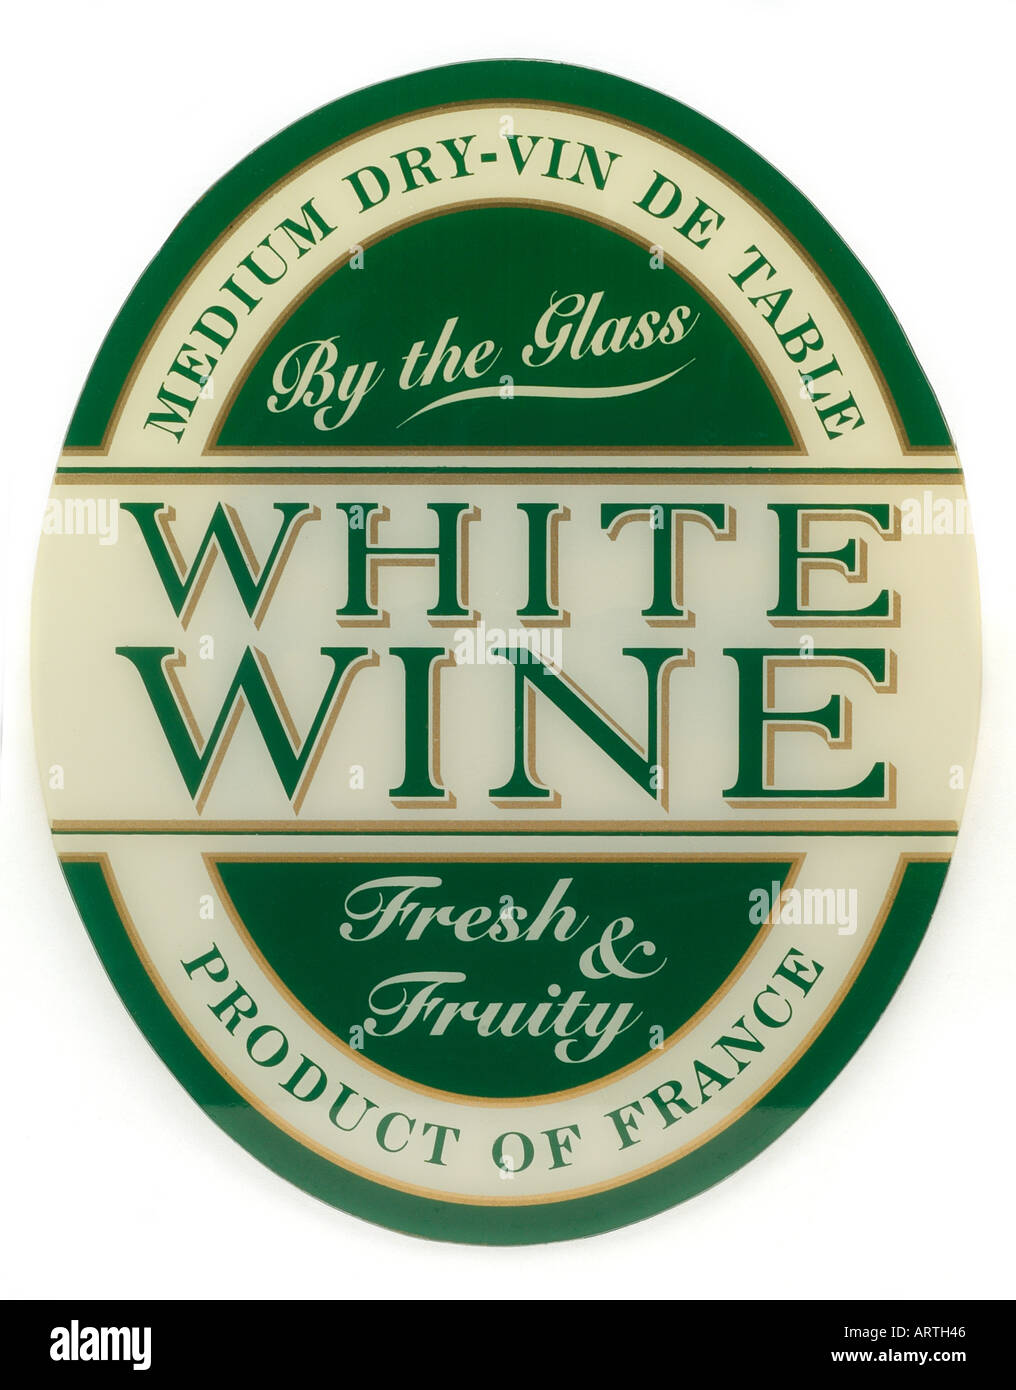 Vin blanc demi-sec vin de table par le verre produit doux et fruité de France Angleterre Royaume-Uni Royaume-Uni GB Grande Bretagne Banque D'Images